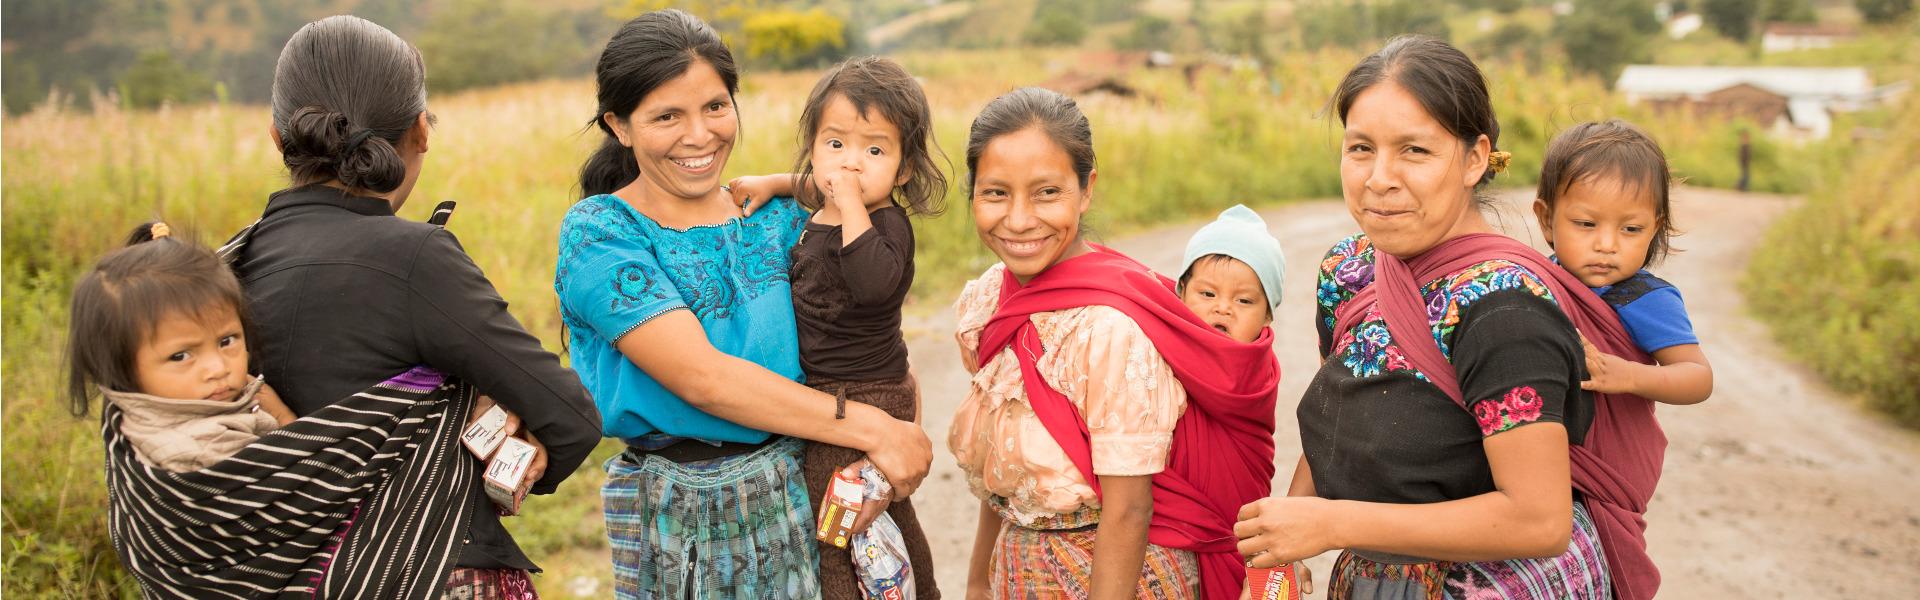 Mütter aus Guatemala mit ihren Babys